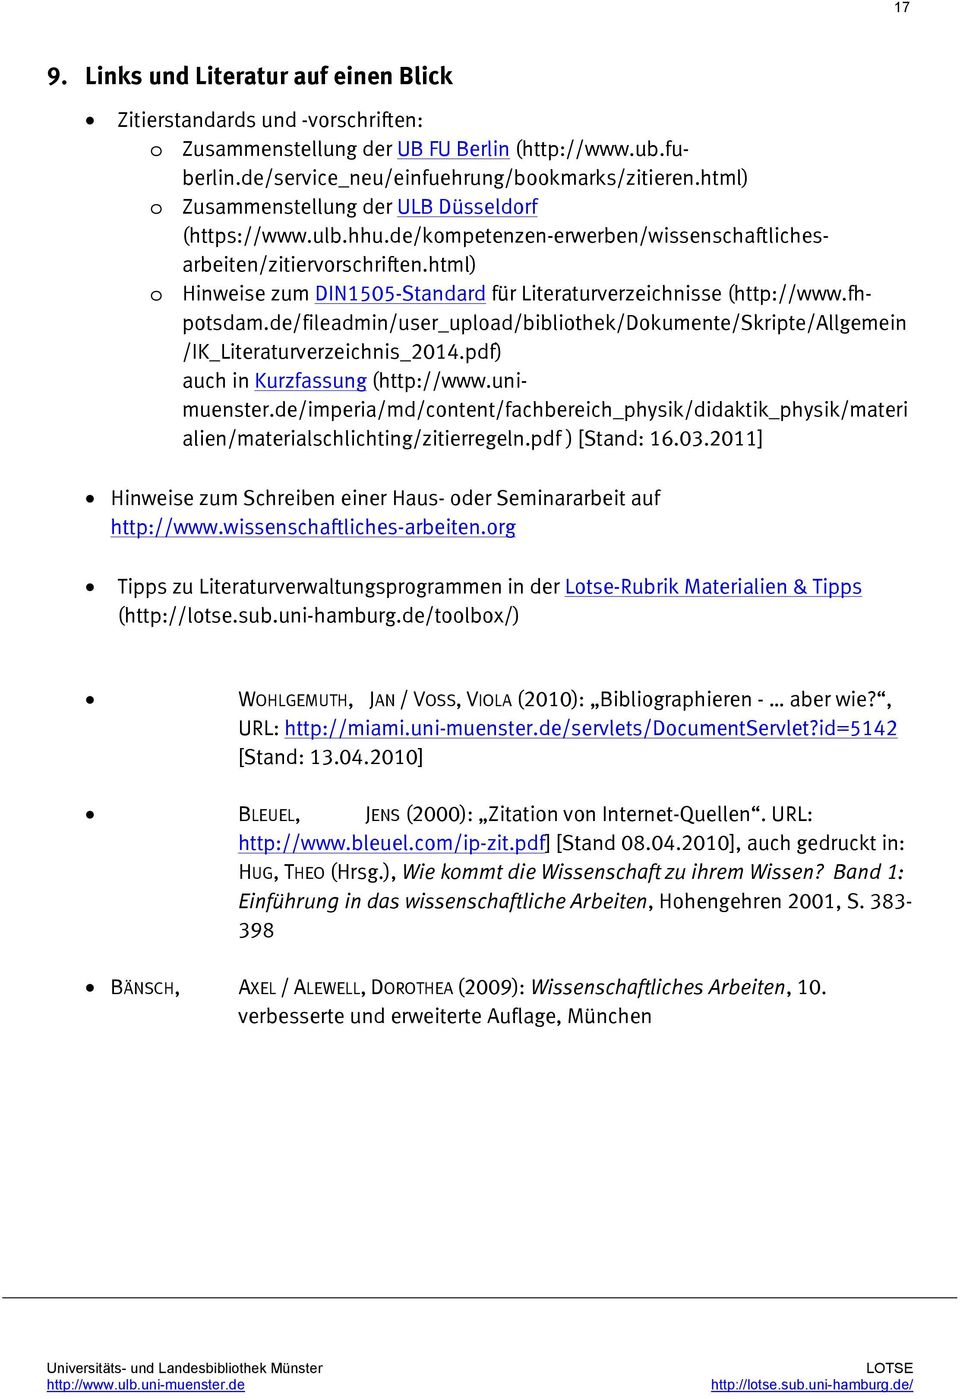 html) o Hinweise zum DIN1505-Standard für Literaturverzeichnisse (http://www.fhpotsdam.de/fileadmin/user_upload/bibliothek/dokumente/skripte/allgemein /IK_Literaturverzeichnis_2014.